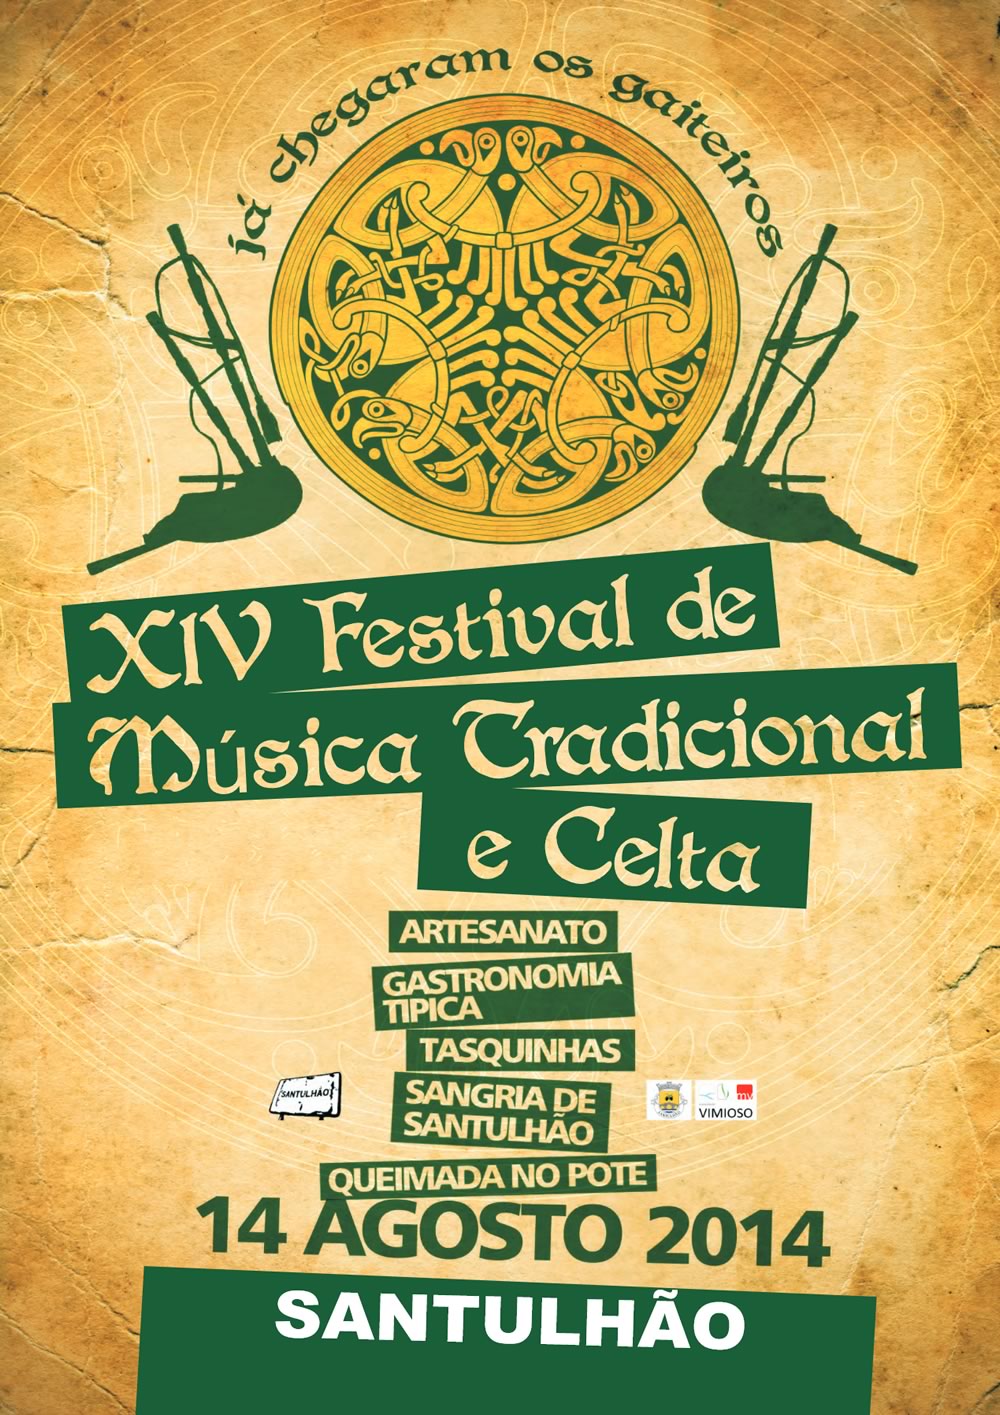 Festival de Música Tradicional e Celta de Santulhão